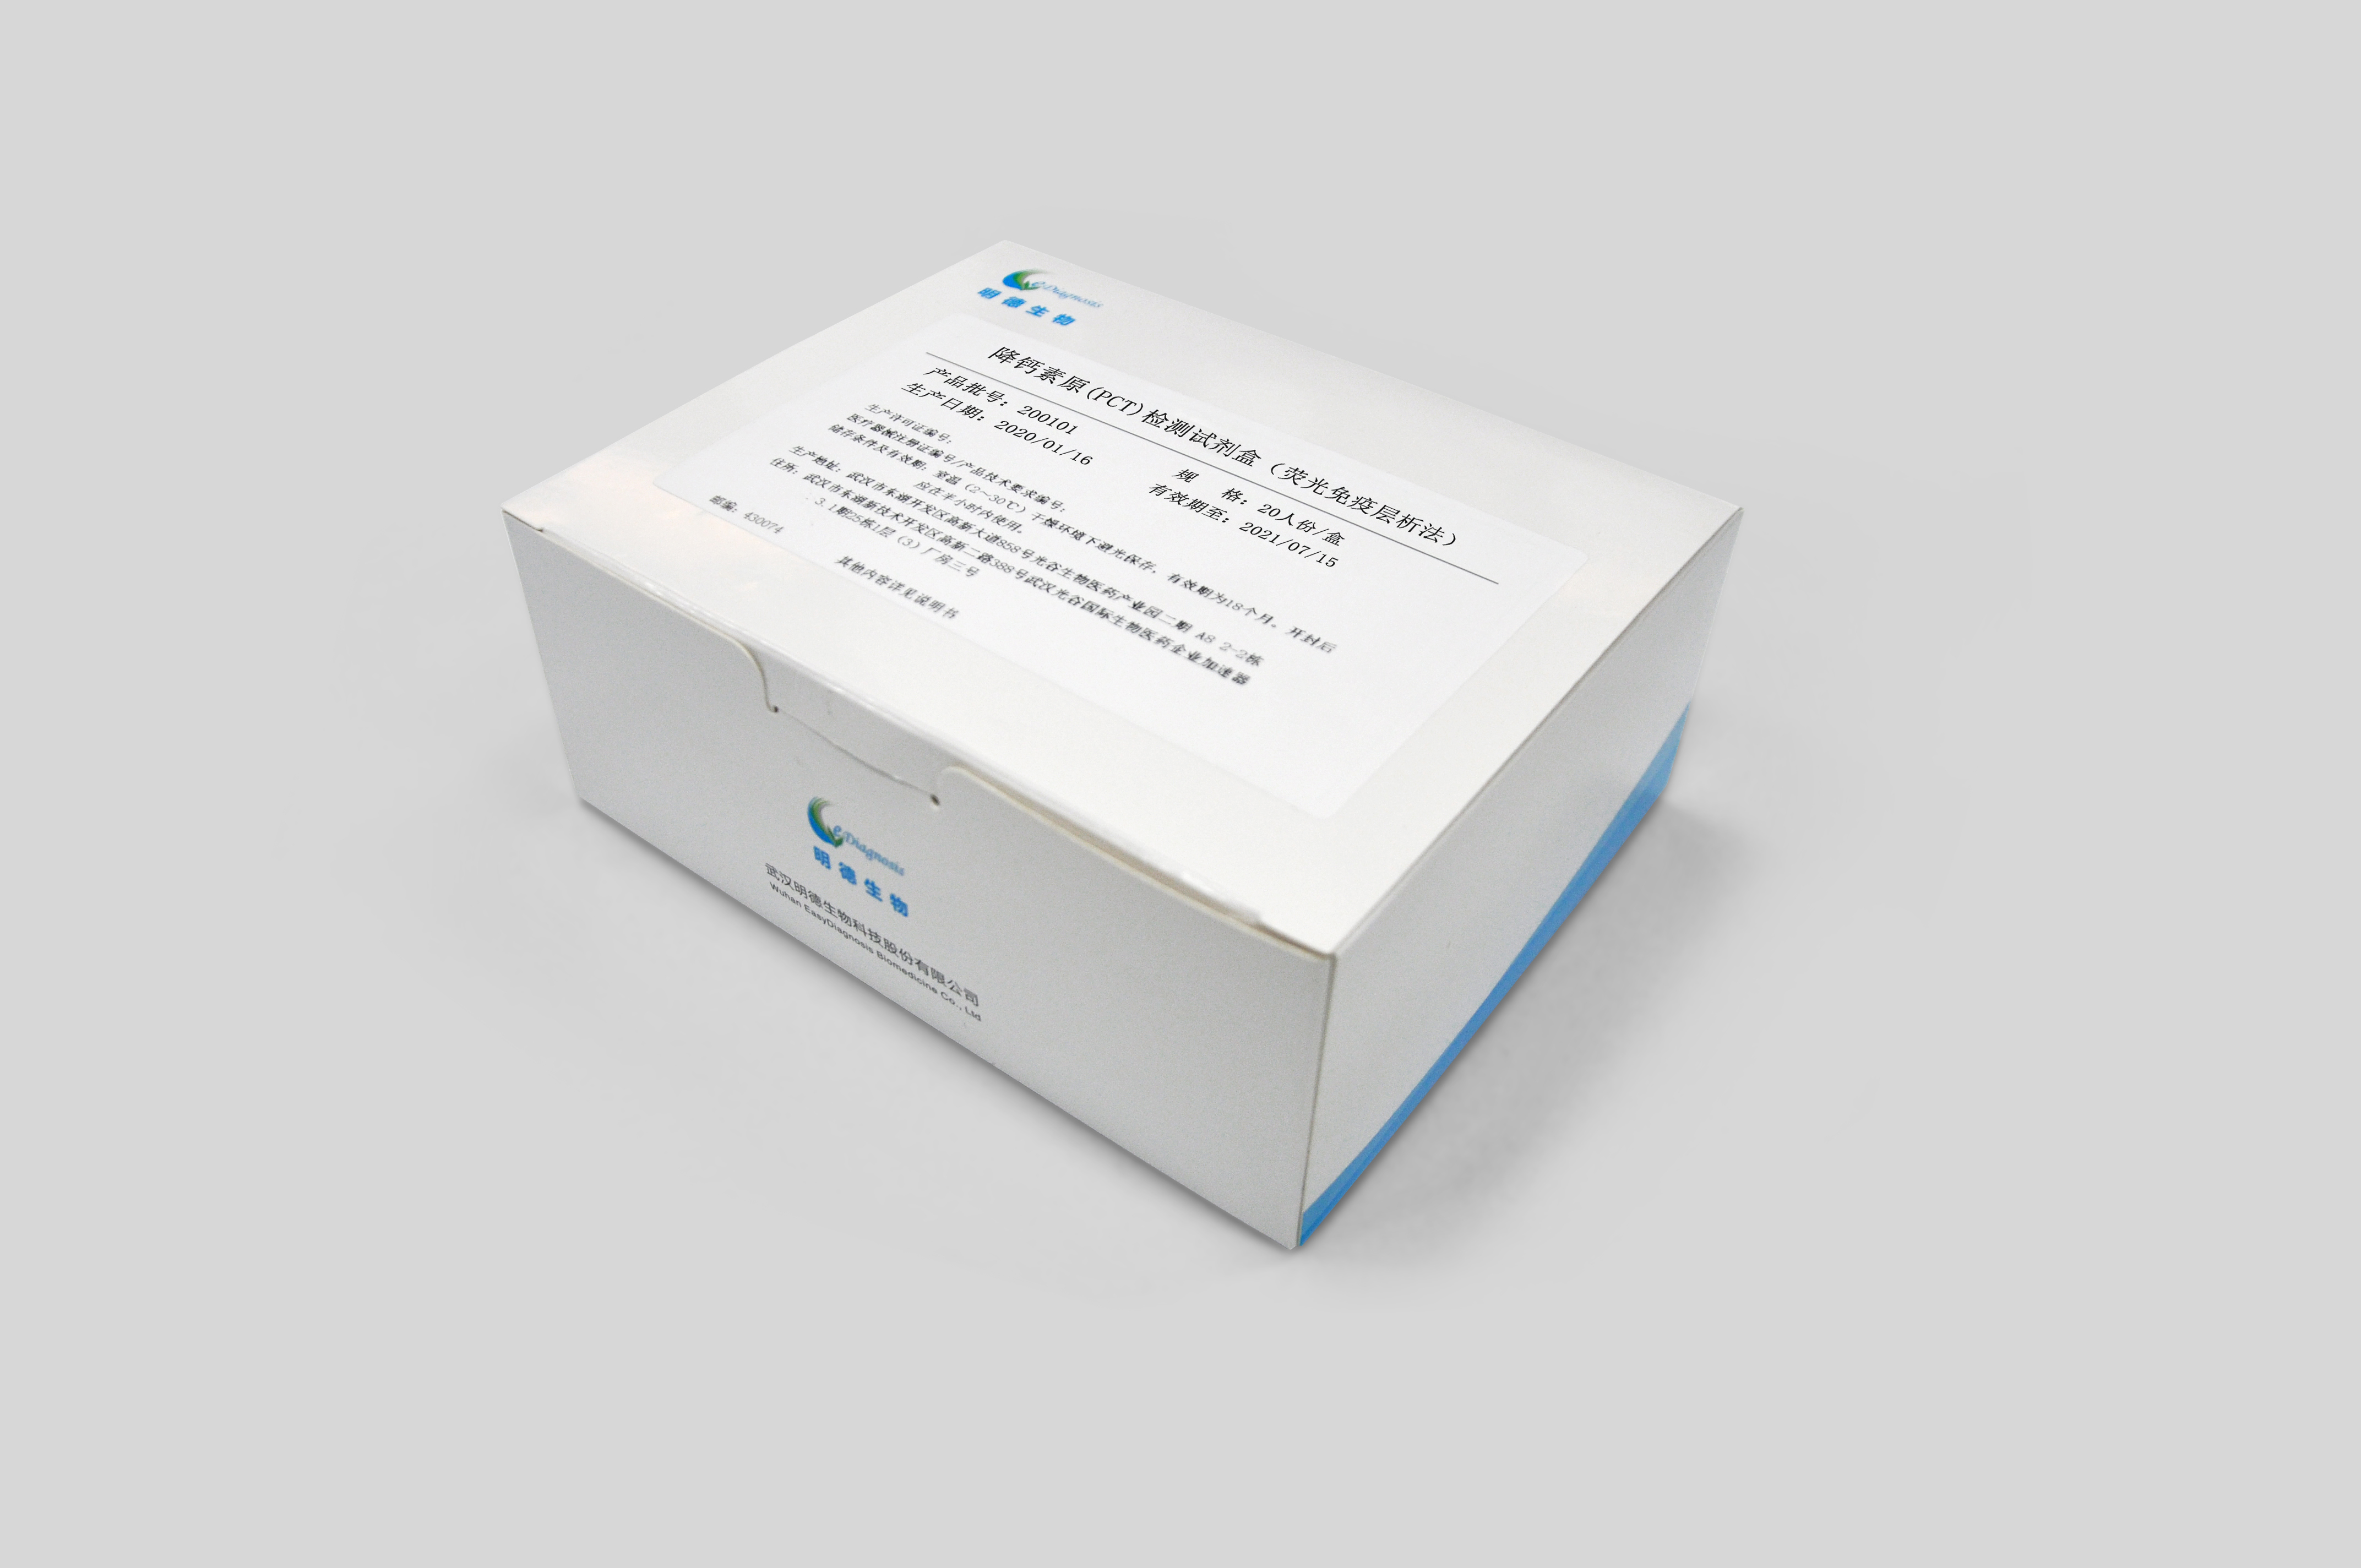 【明德】降钙素原(PCT)检测试剂盒(荧光免疫层析法) / 20人份/盒、40人份/盒